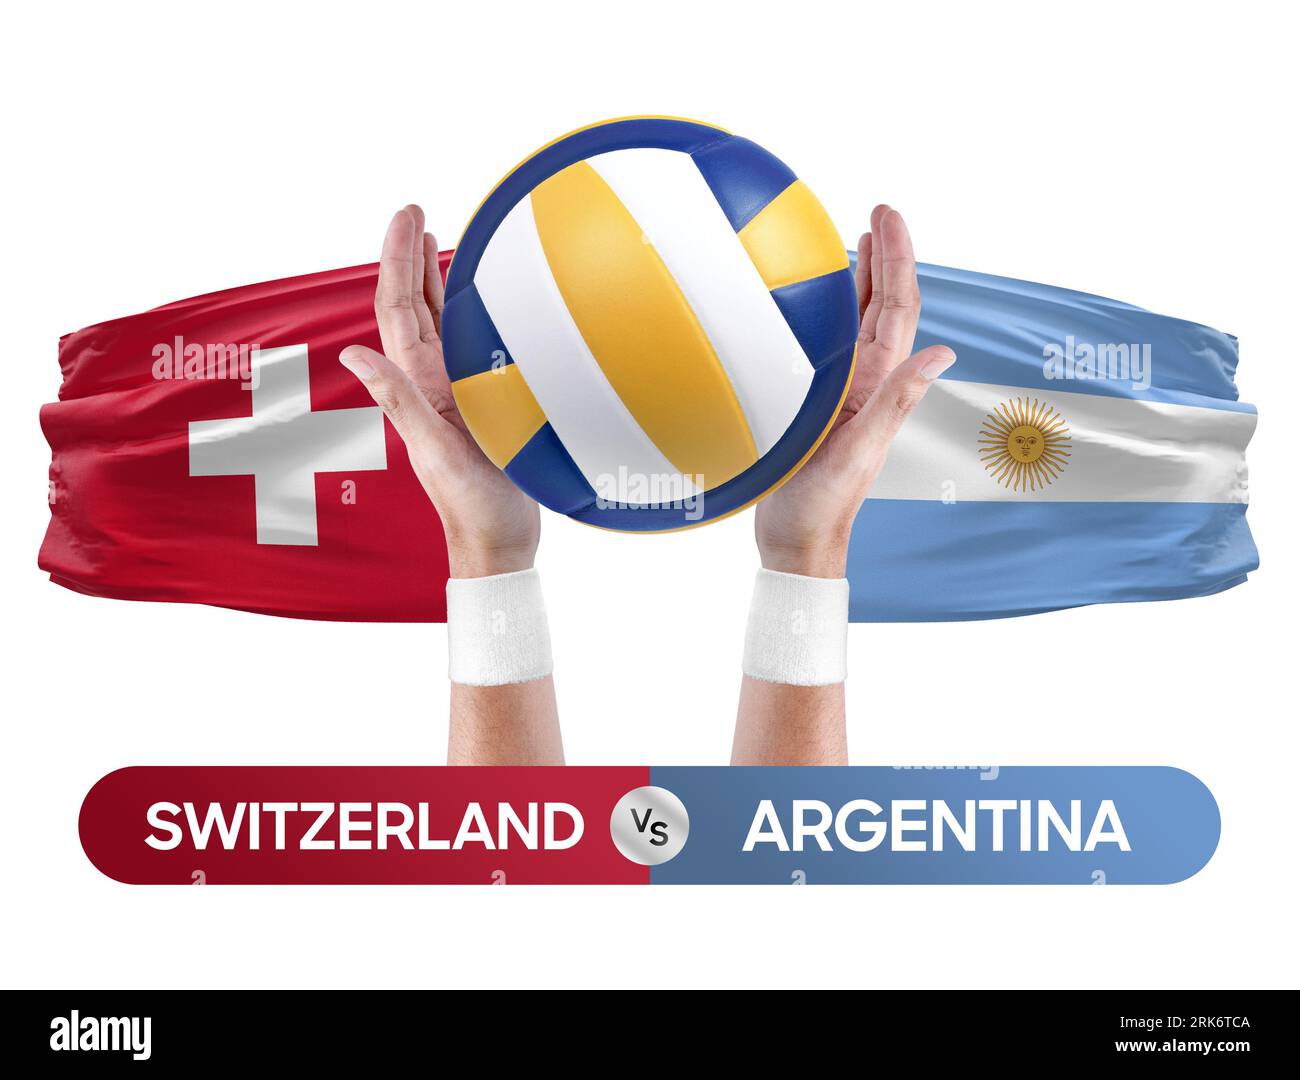 Schweiz gegen Argentinien Nationalmannschaften Volleyball Volleyball Volleyball Match Competition Concept. Stockfoto